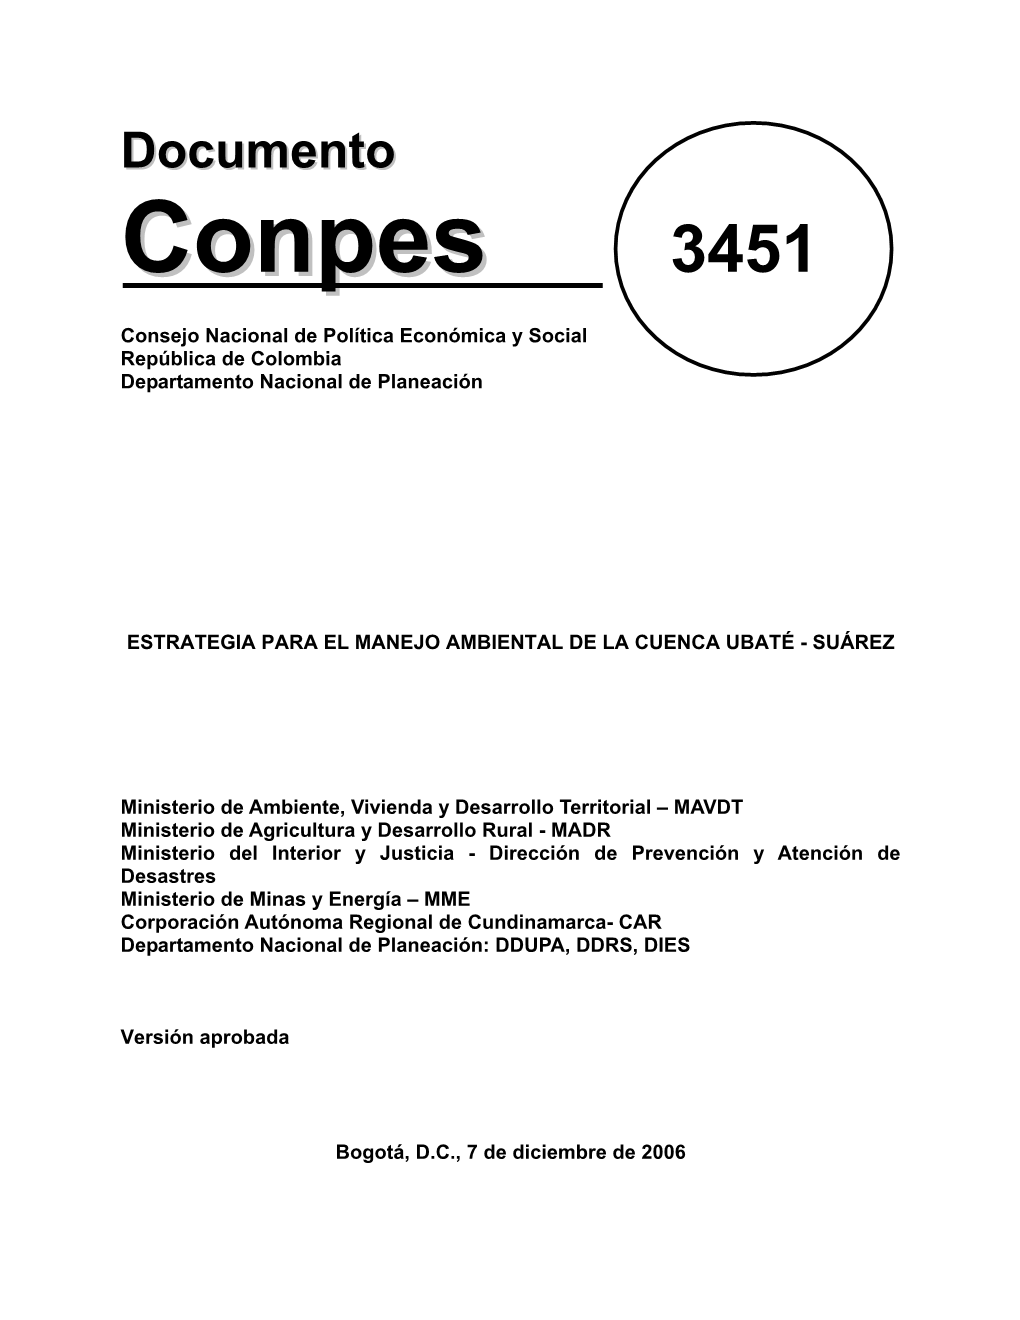 Conpes No. 3451 De 2006